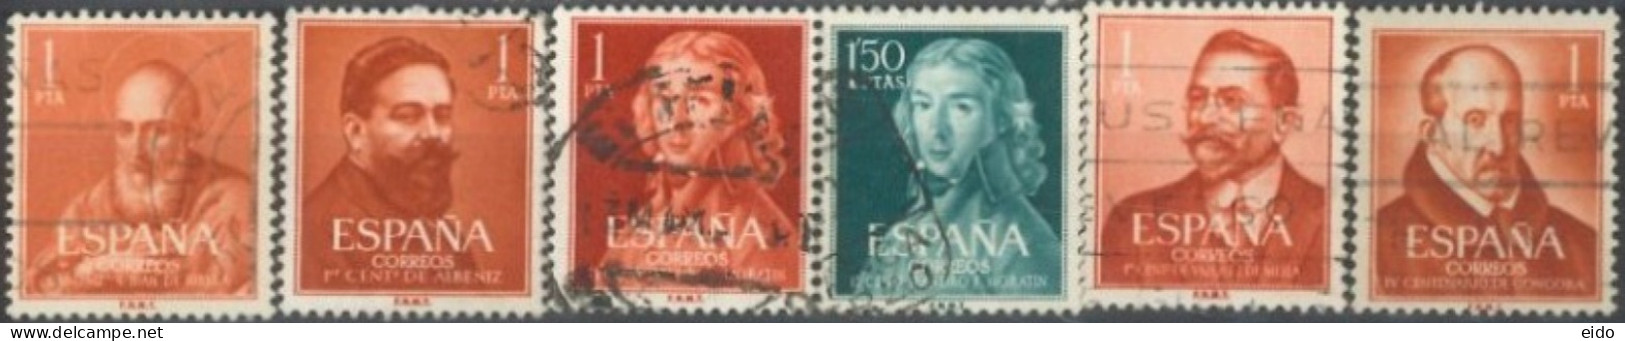 SPAIN, 1960/61, SAINTS & CELEBRITIES STAMPS SET OF 6, USED. - Oblitérés